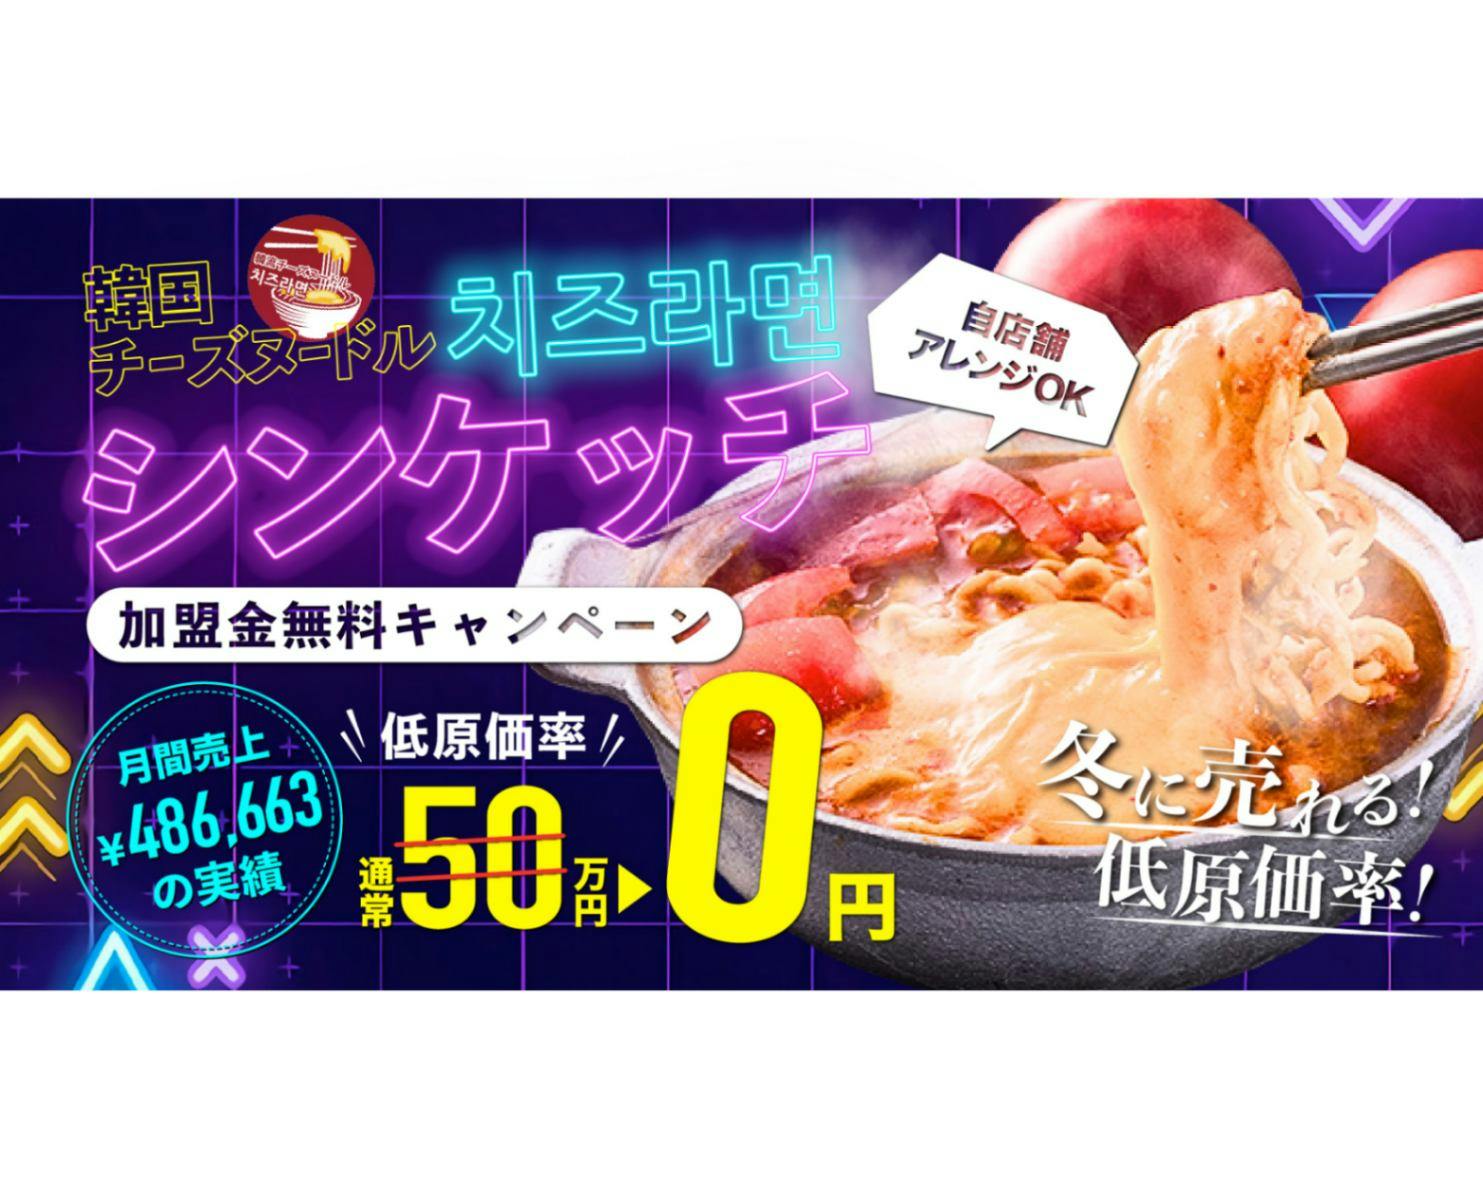 韓流チーズヌードル シンケッチのブランド画像